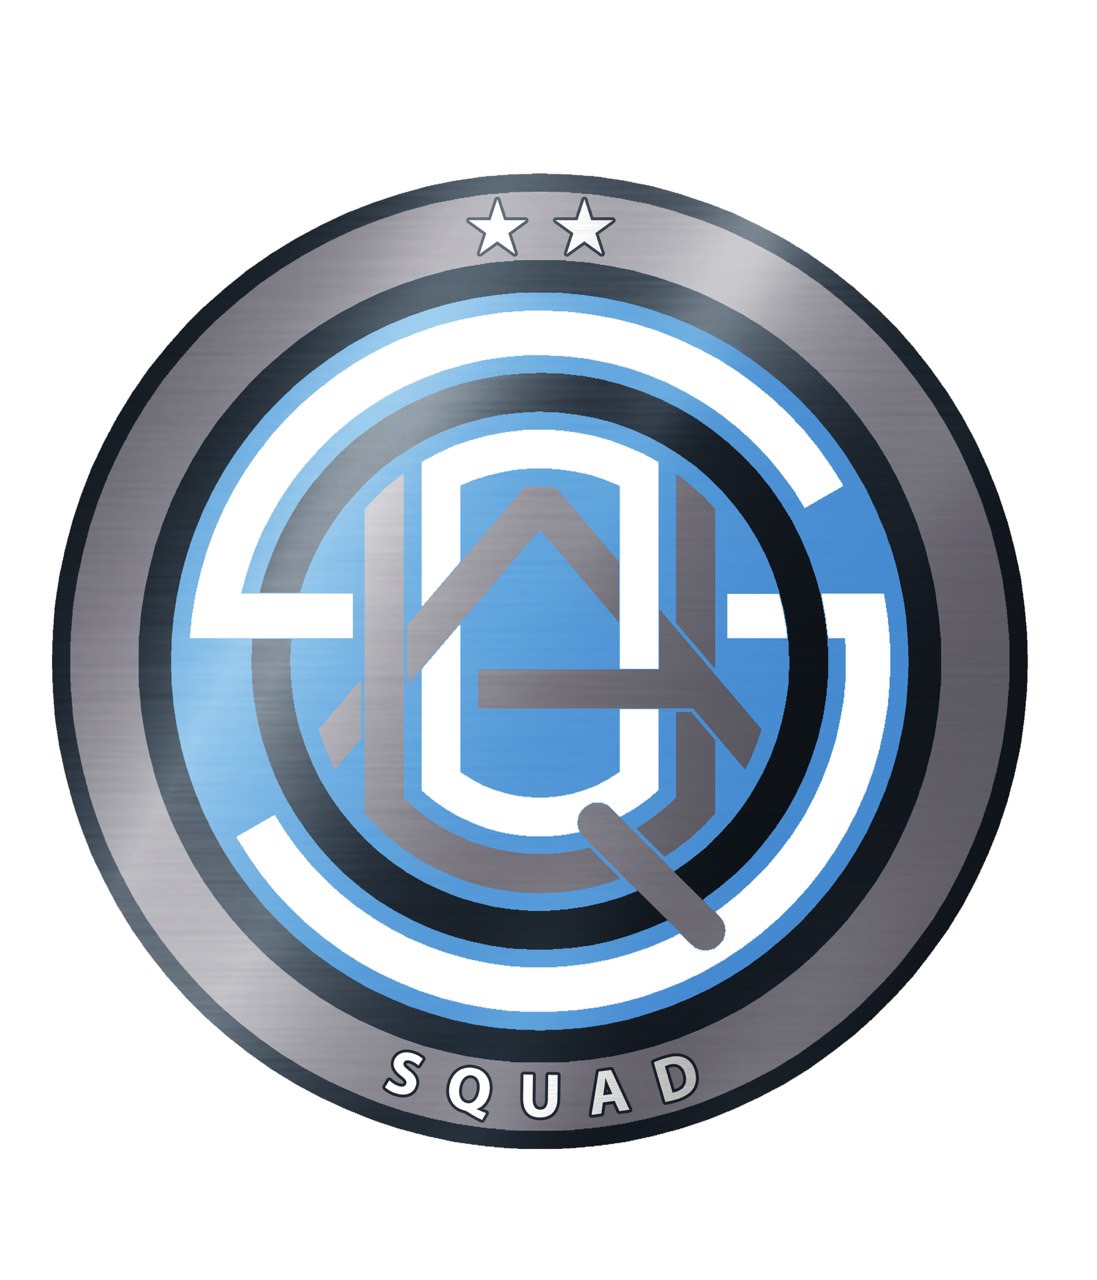 FC Squad 